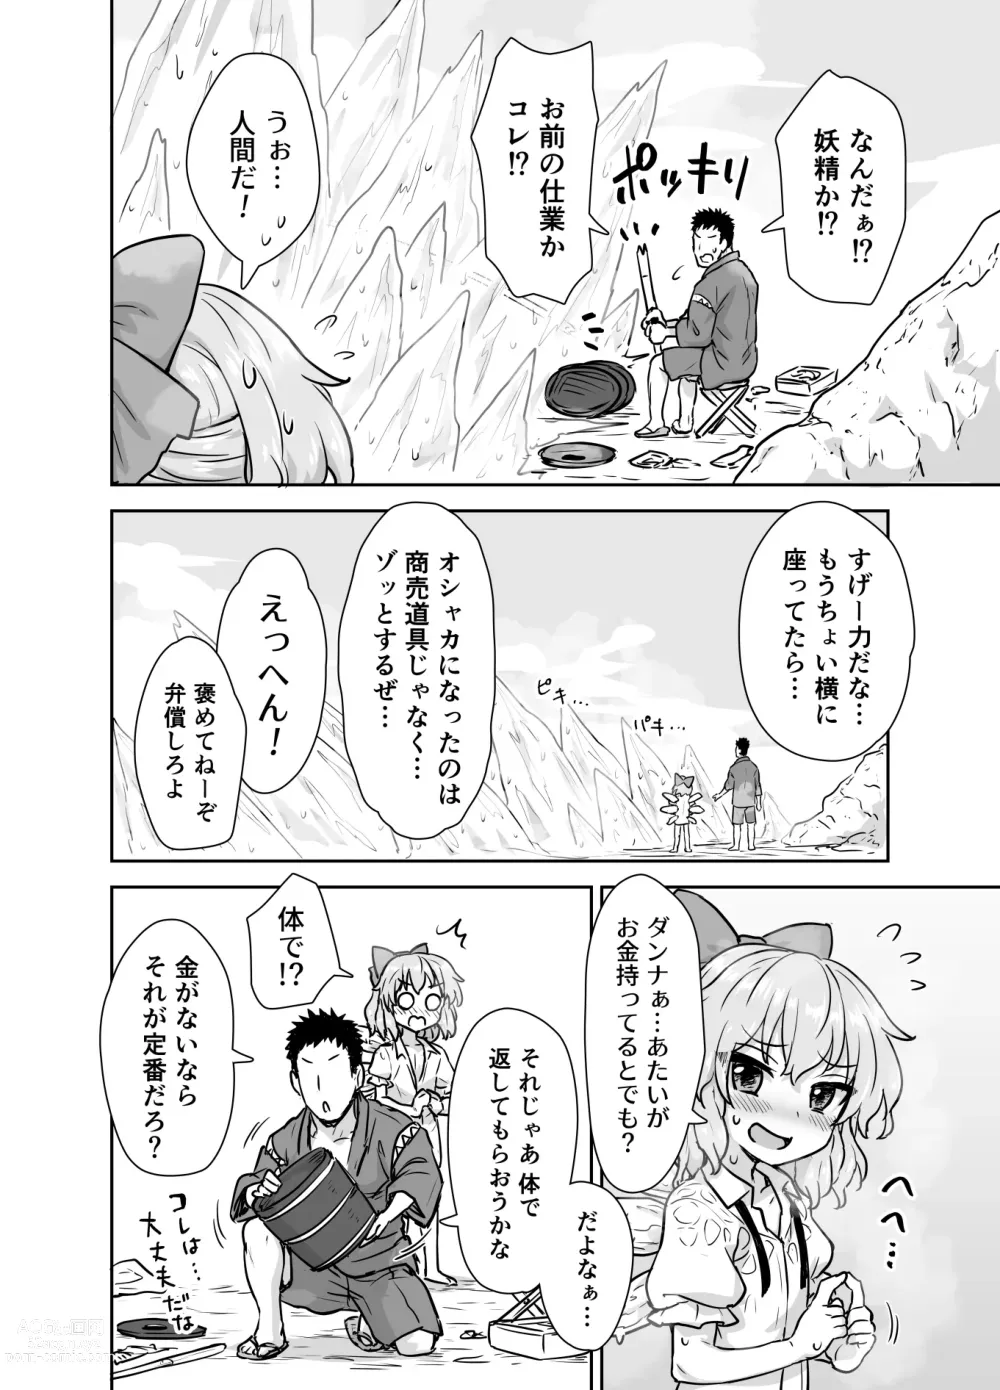 Page 3 of doujinshi Manatsu no cirno-chan